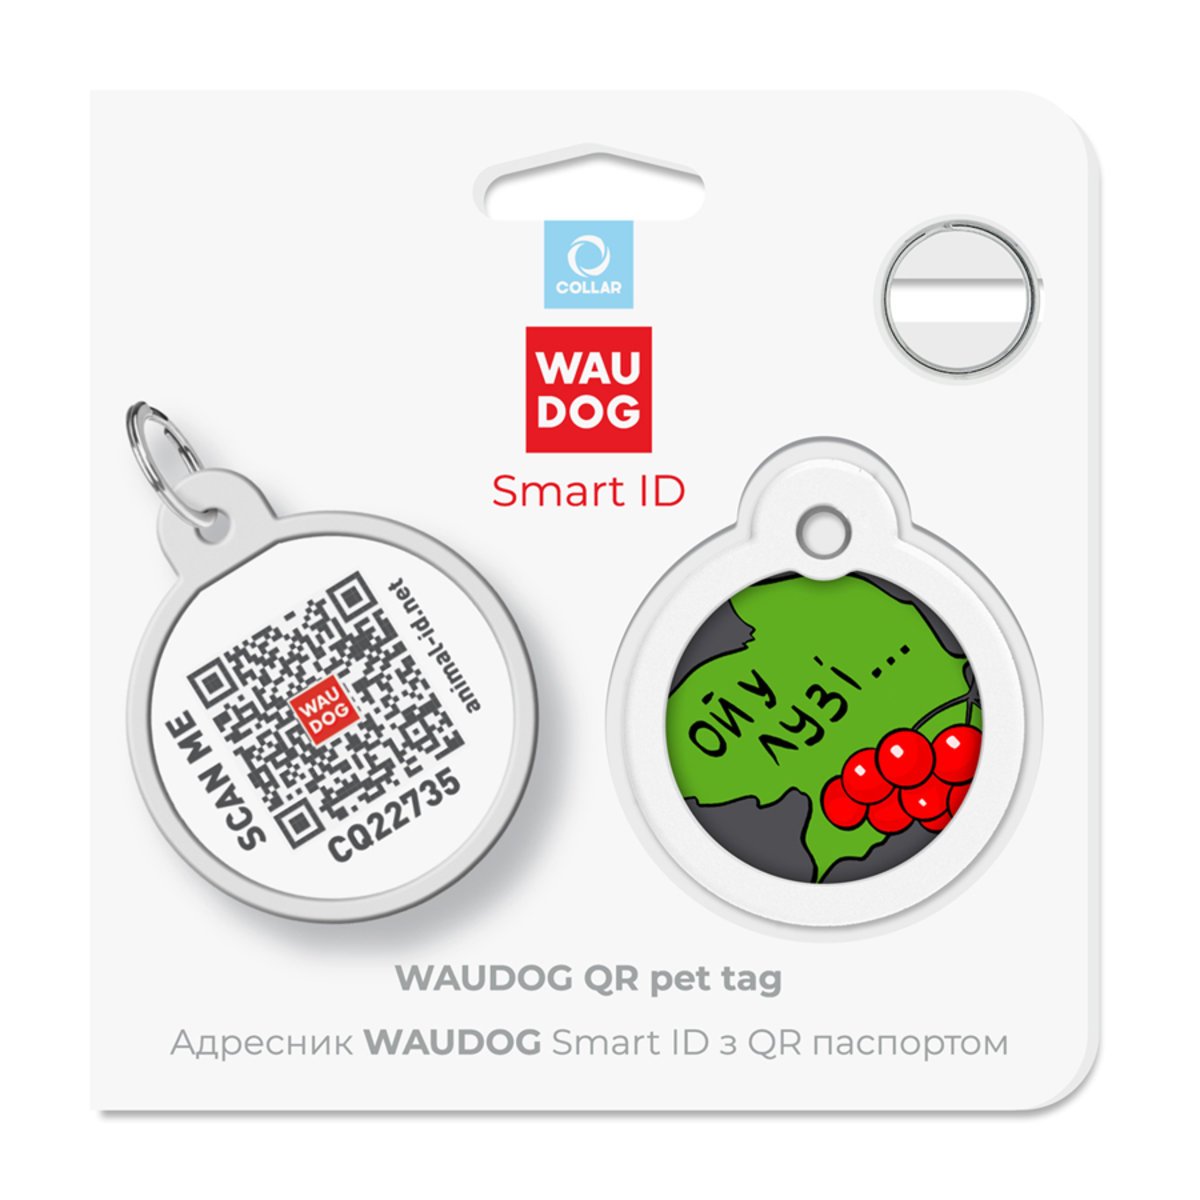 Адресник для собак и кошек Waudog Smart ID с QR паспортом, Калина, M, диаметр 30 мм - фото 5